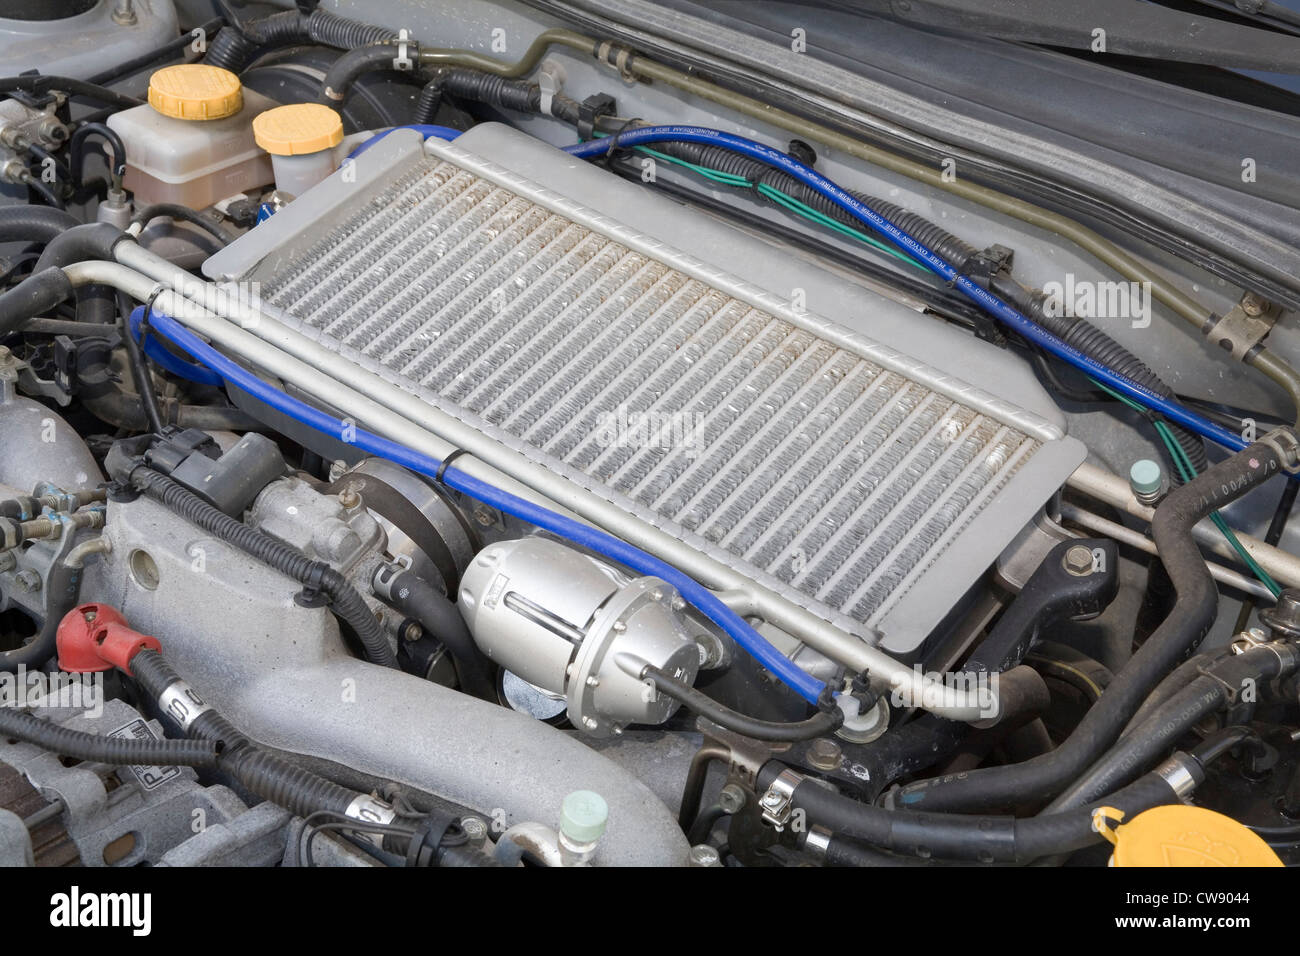 Scambiatore di calore del turbocompressore nel vano motore di una Subaru WRX STi Impreza giapponese auto sportive. Foto Stock